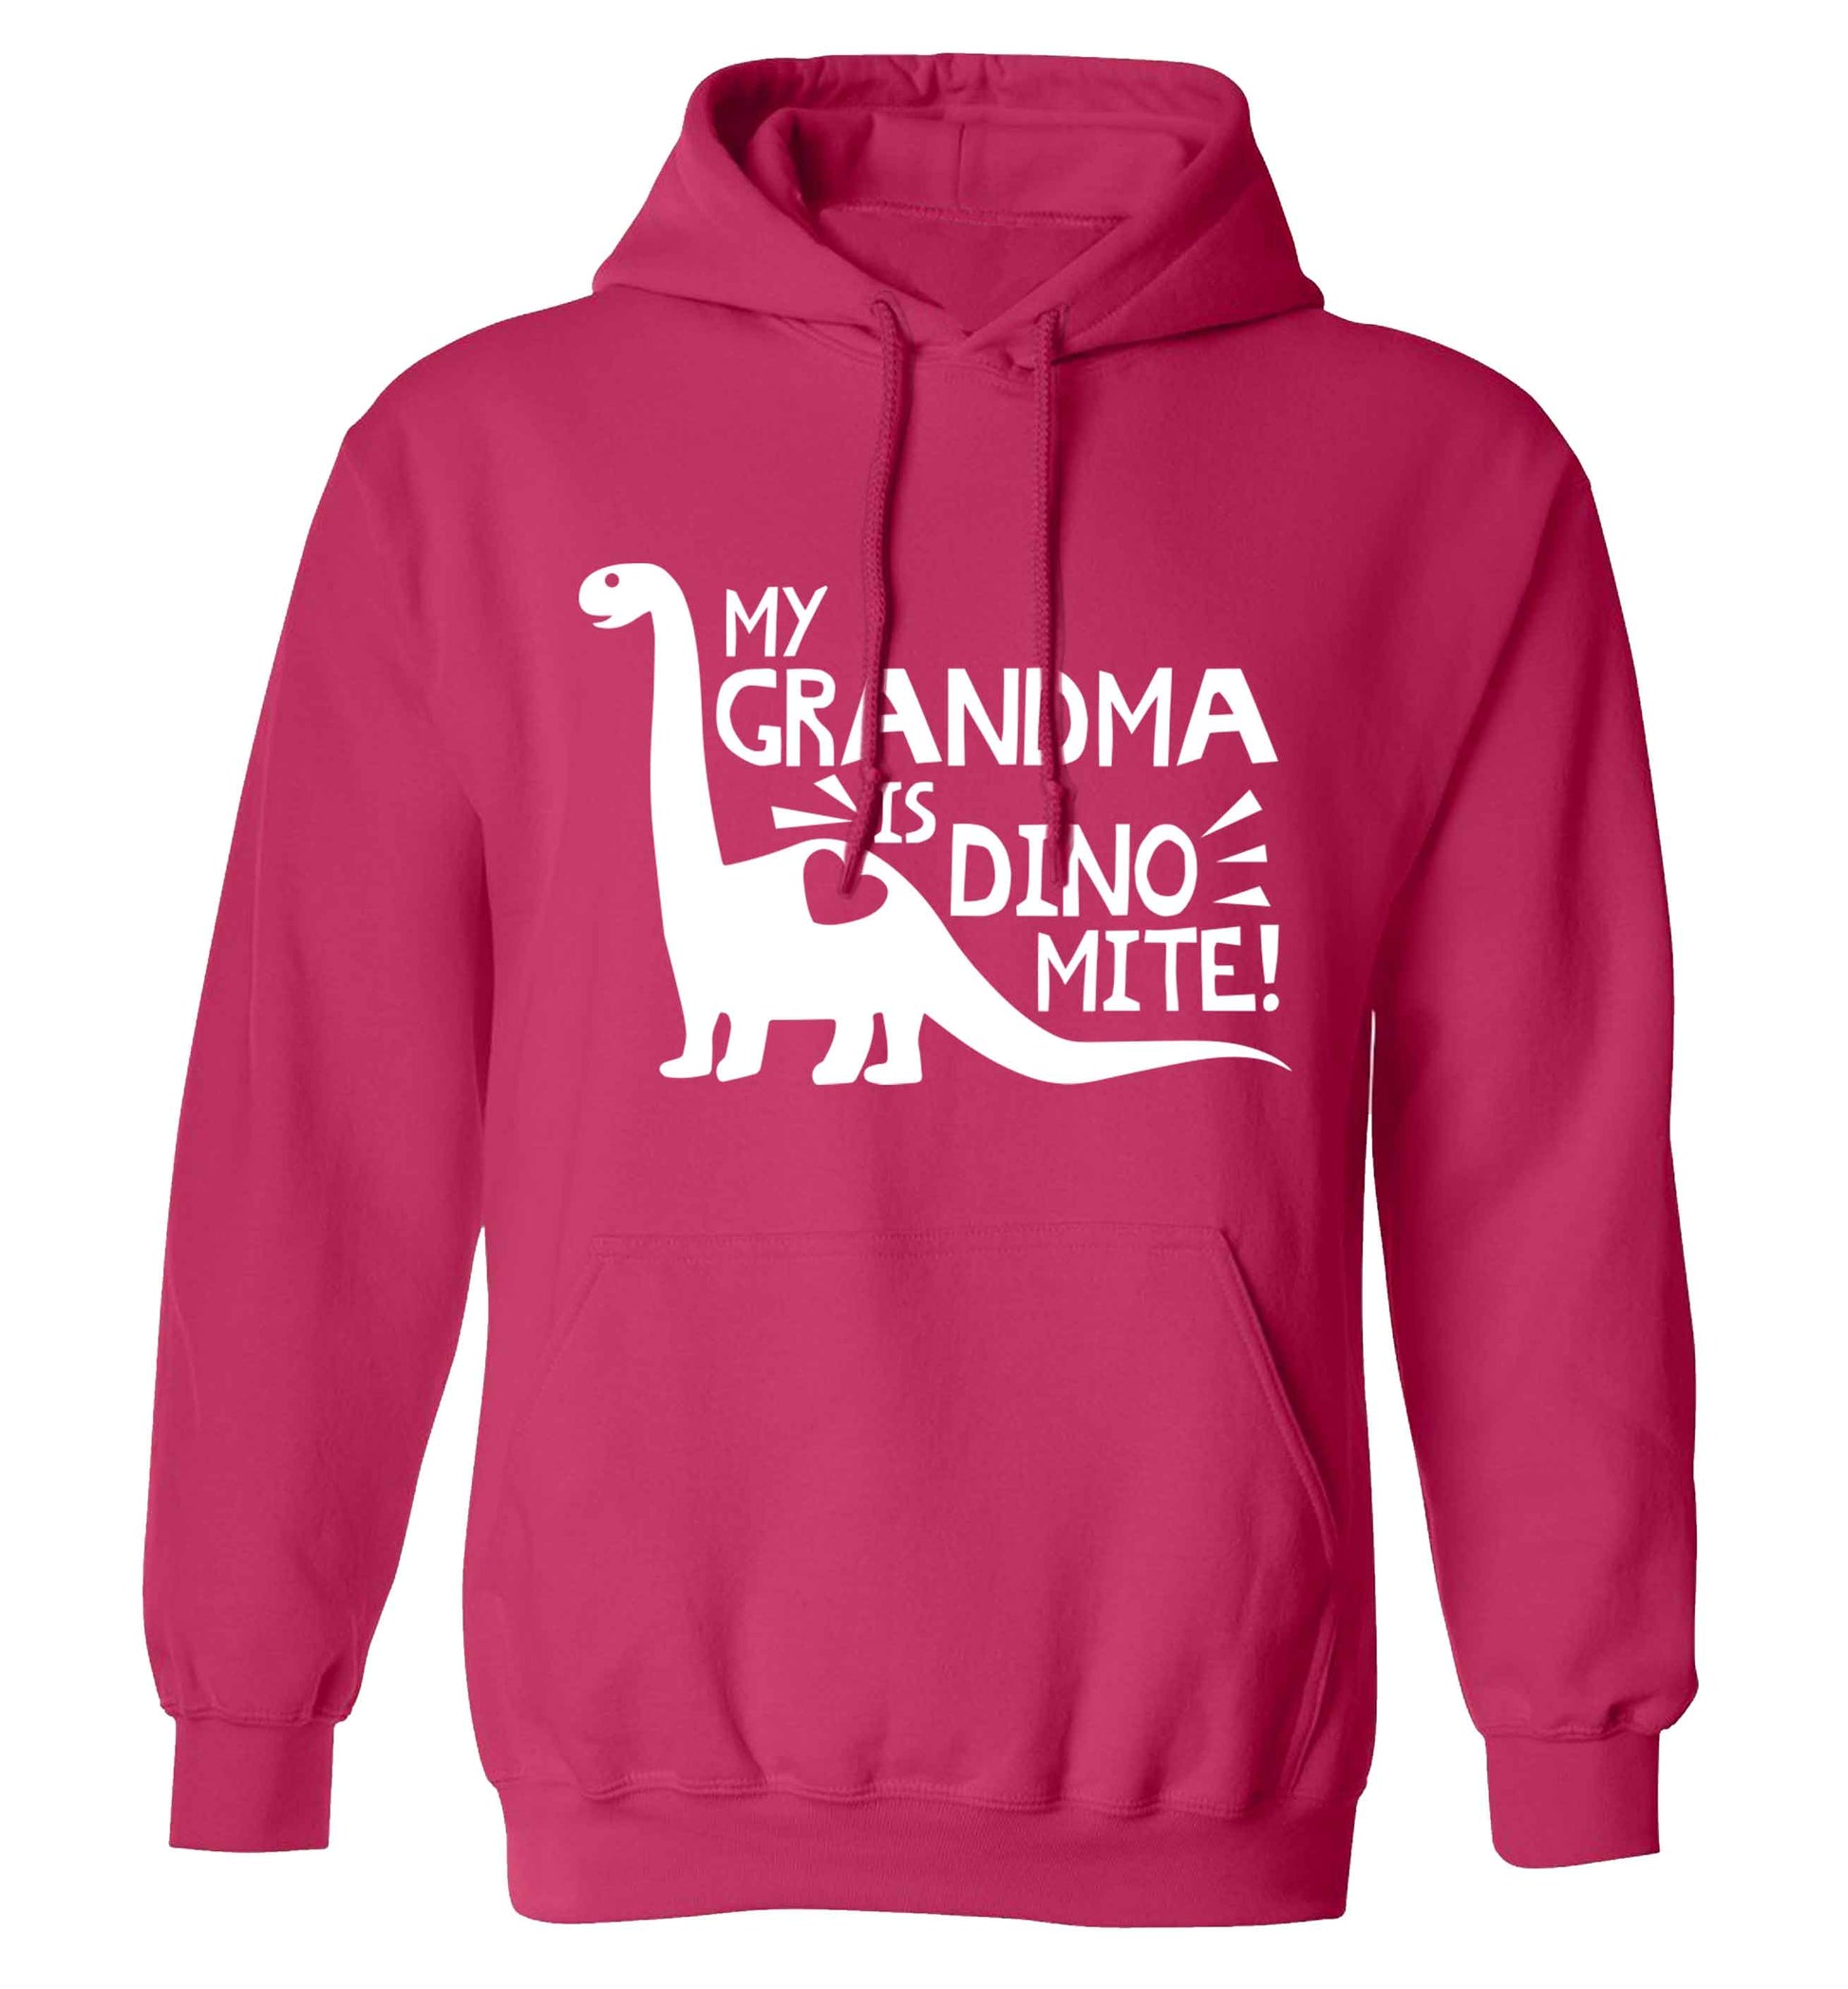 My grandma is dinomite! adults unisex pink hoodie 2XL